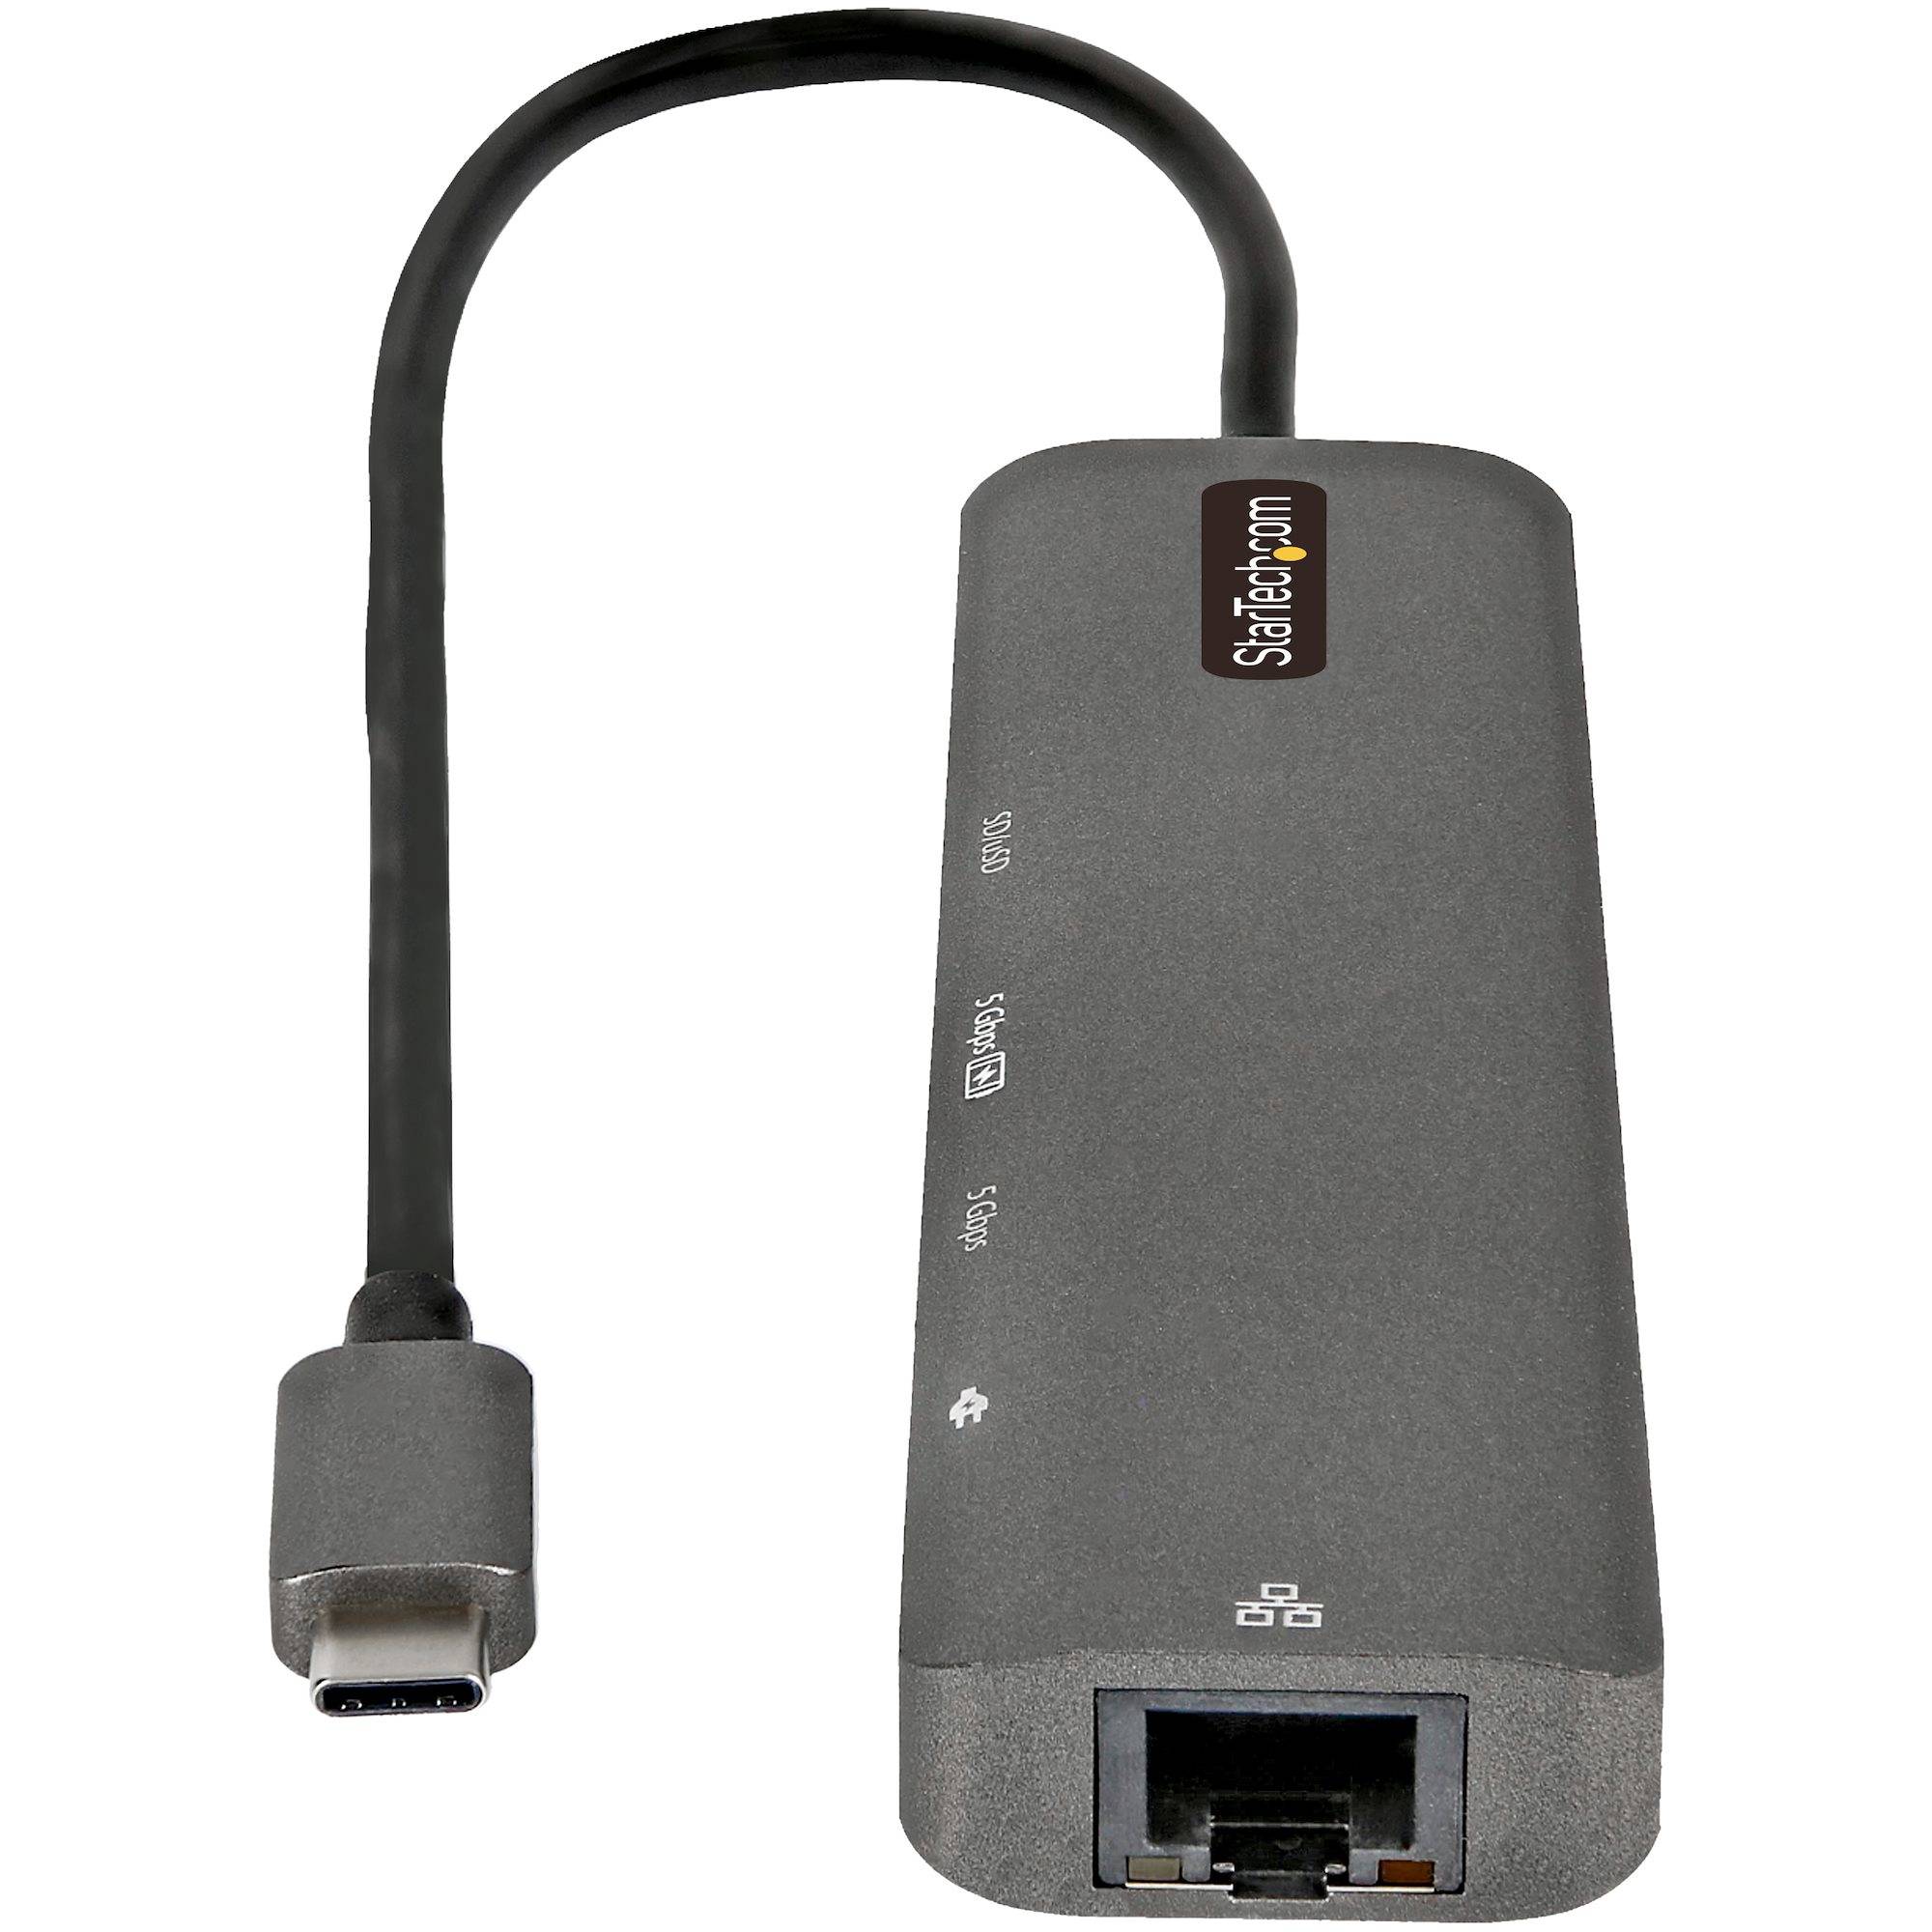 Rca Informatique - image du produit : ADAPTATEUR MULTIPORT USB-C 4K HDMI 2.0 - 100W PD PASSTHROUGH